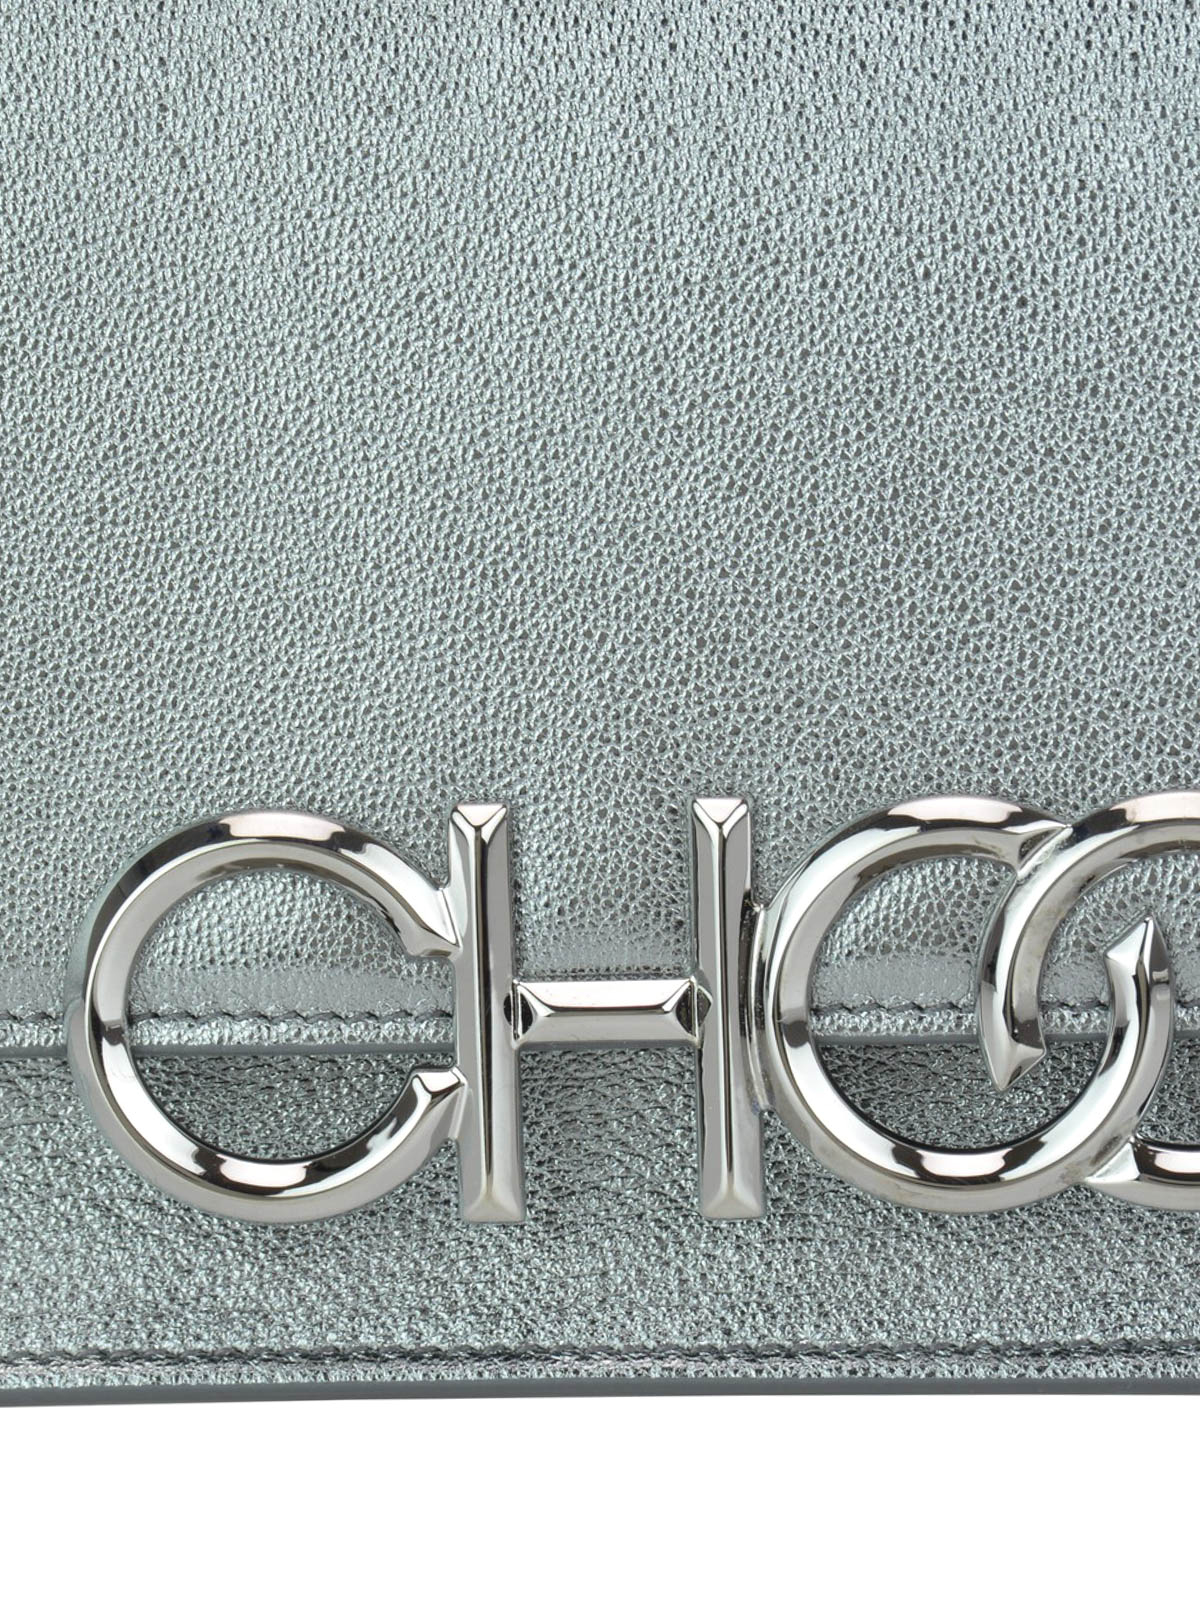 sidney-m-silver-leather-cross-body -bag-shop-online-jimmy-choo-00000160265f00s004.jpg